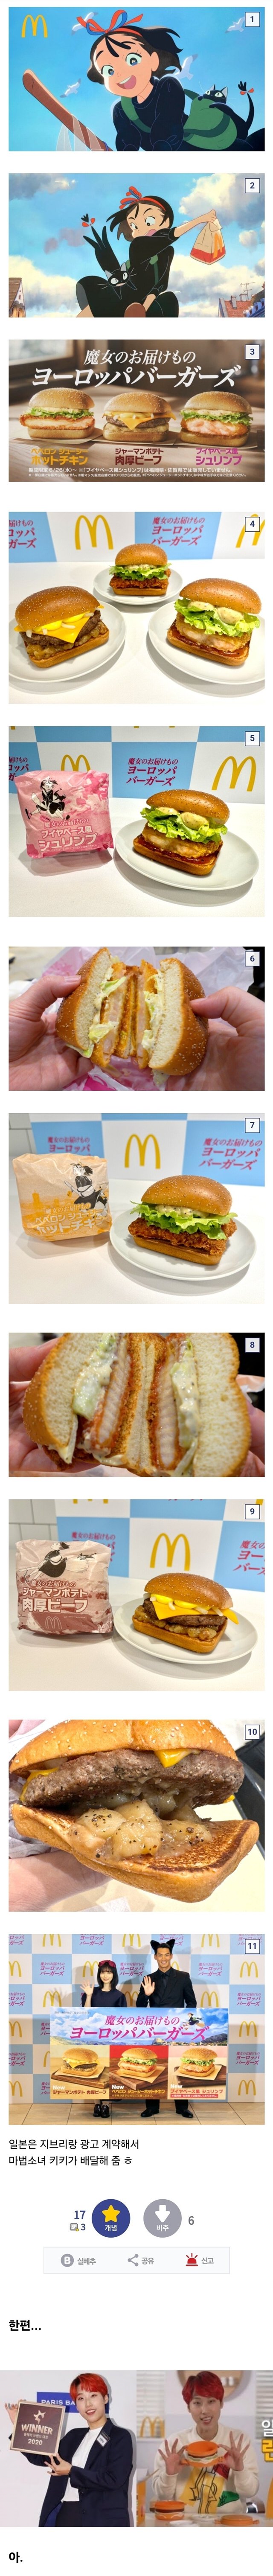 일본 맥도날드